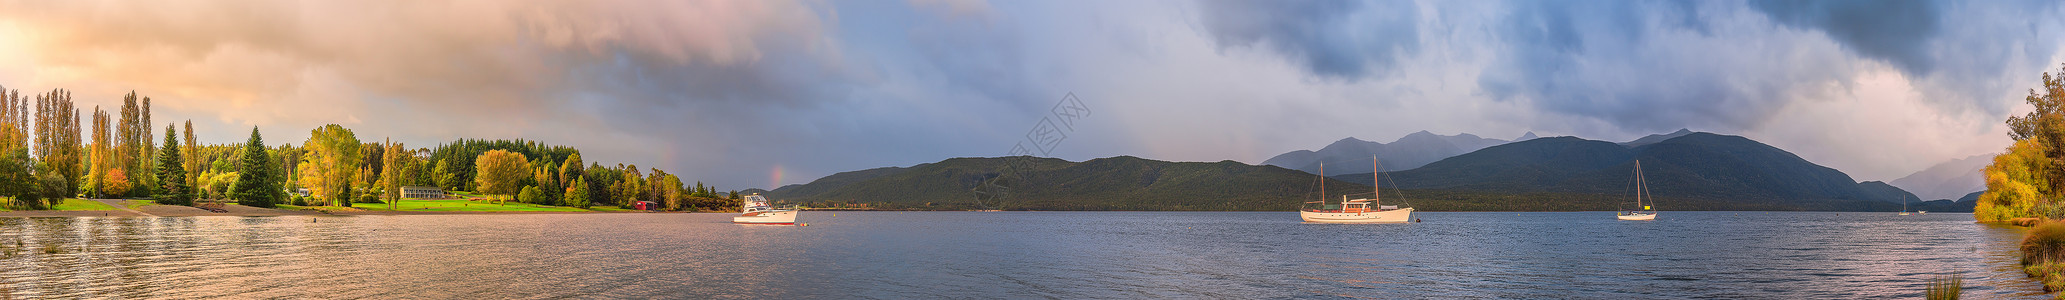 游艇小船新西兰清晨的山川湖泊全景图背景